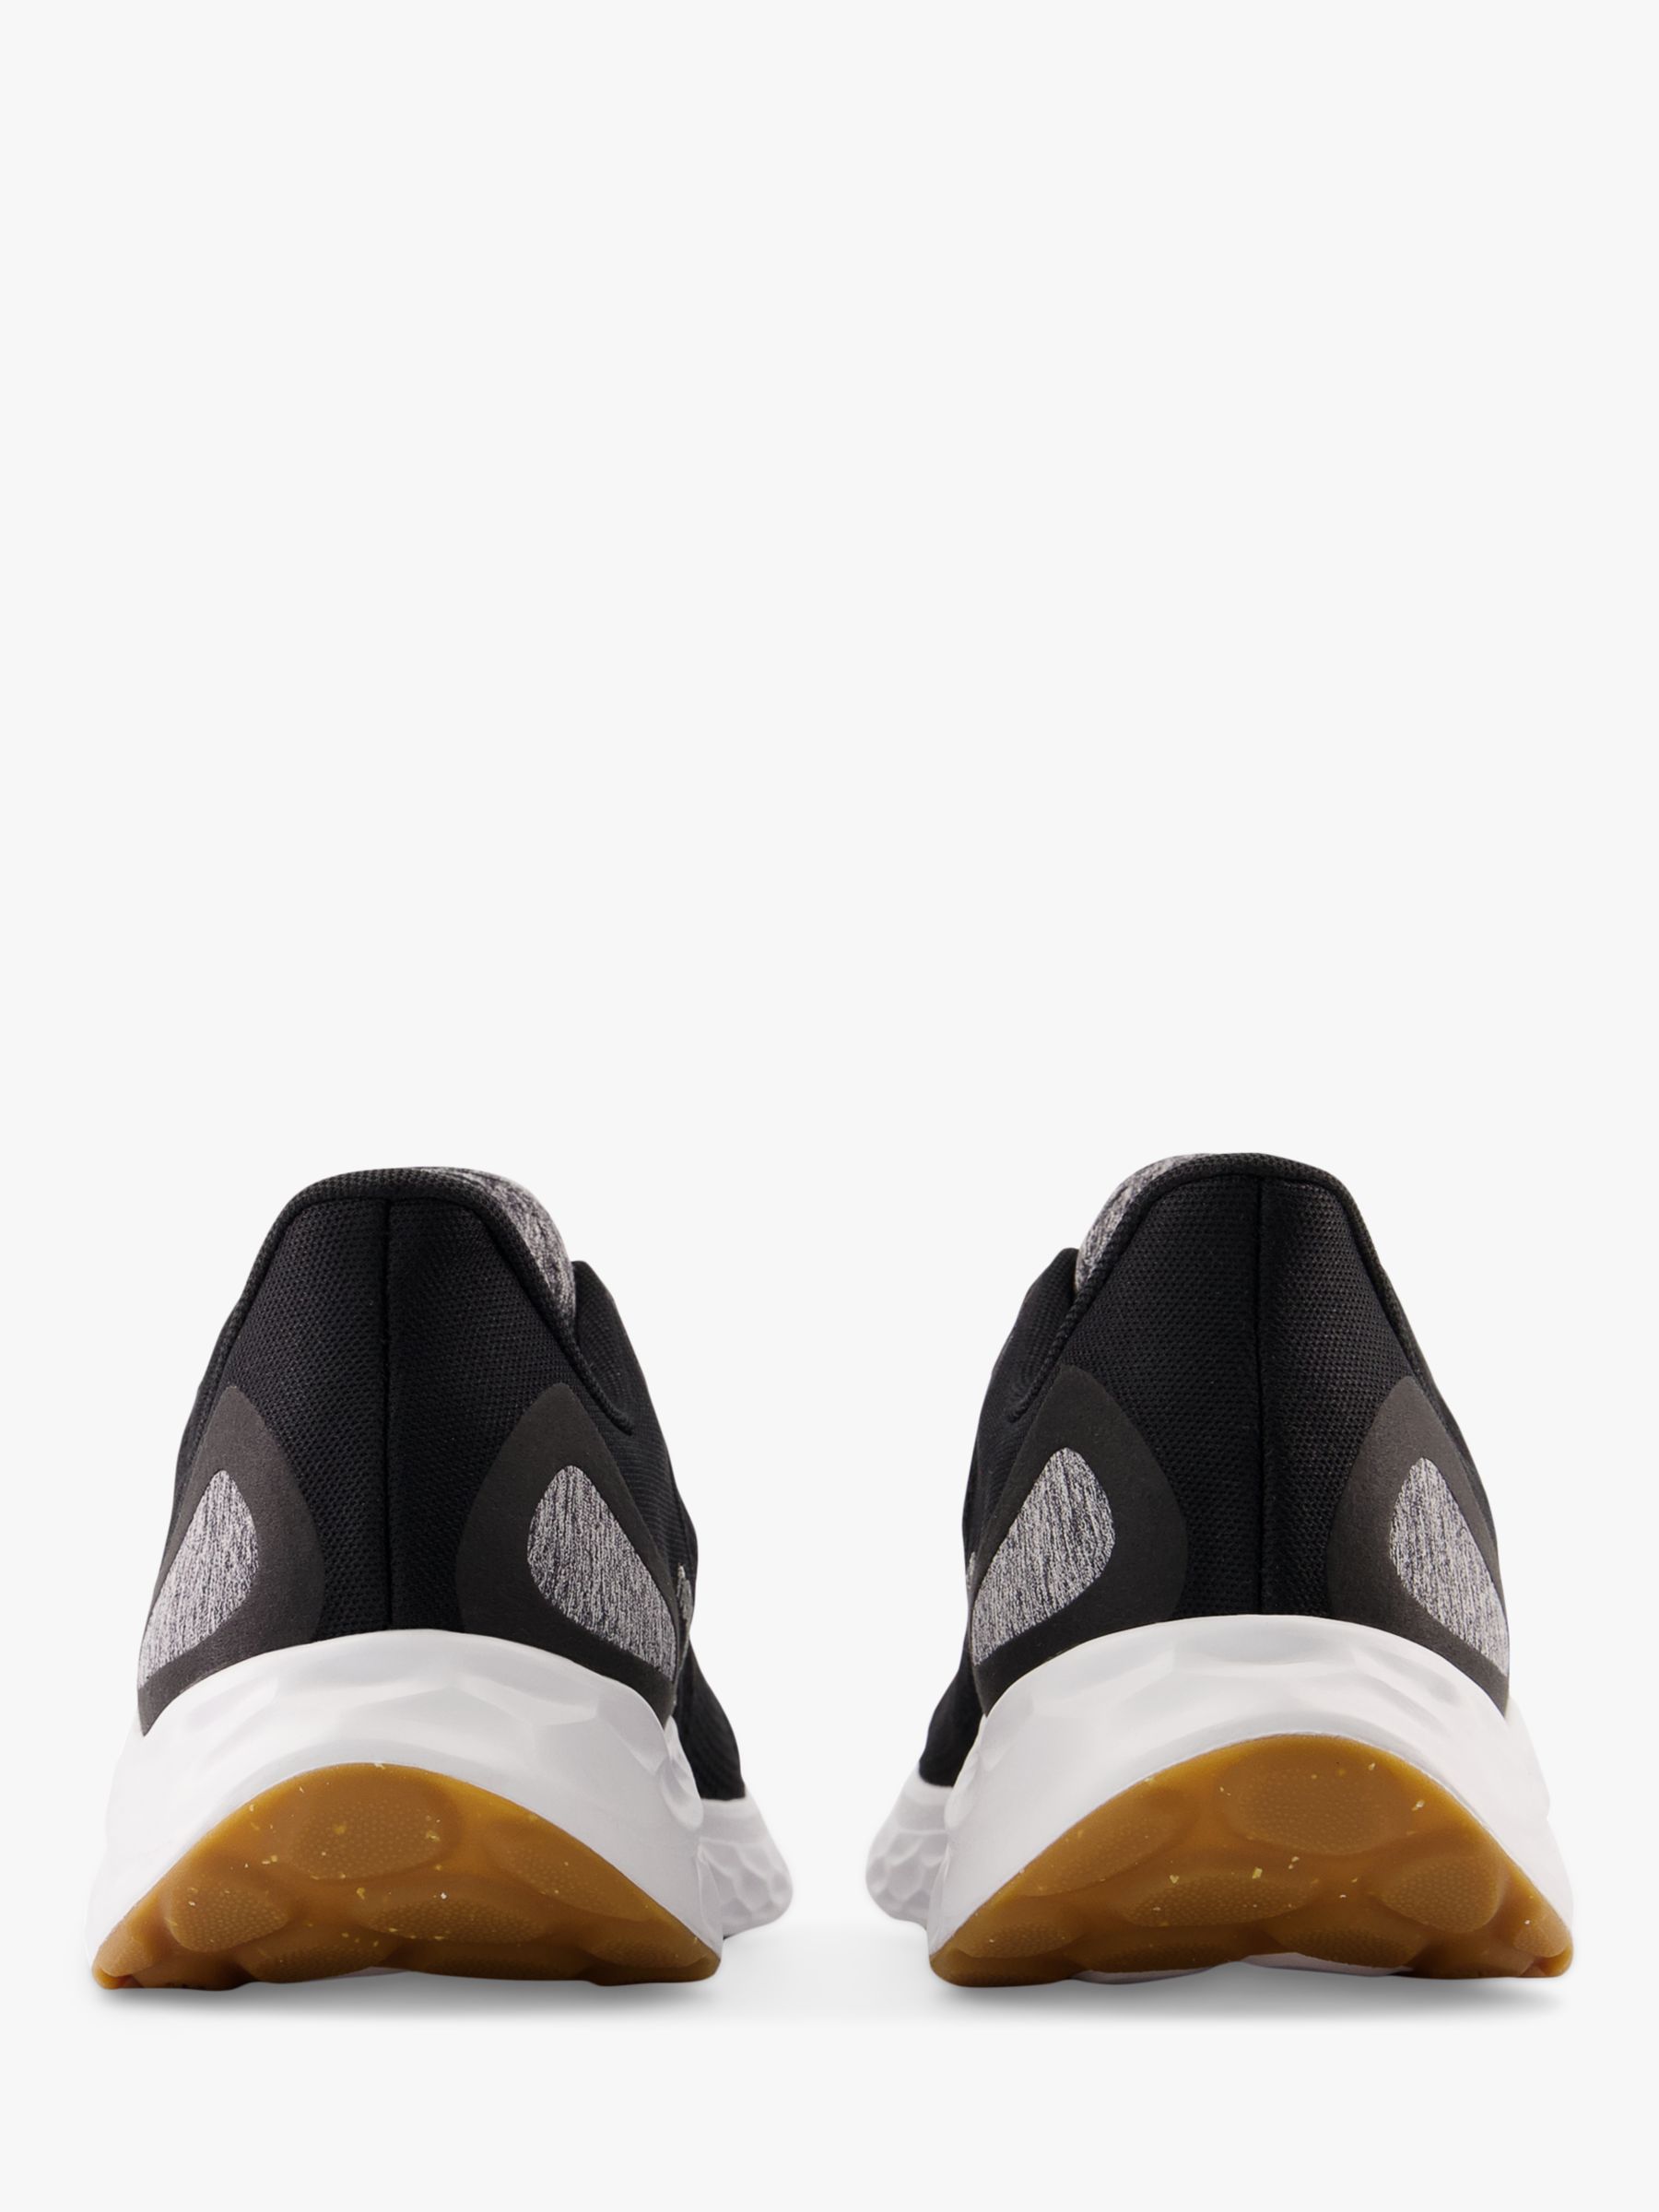 New Balance Fresh Foam Arishi v4 Men's Running Shoes, Black/Silver Metallic/Gum, 7